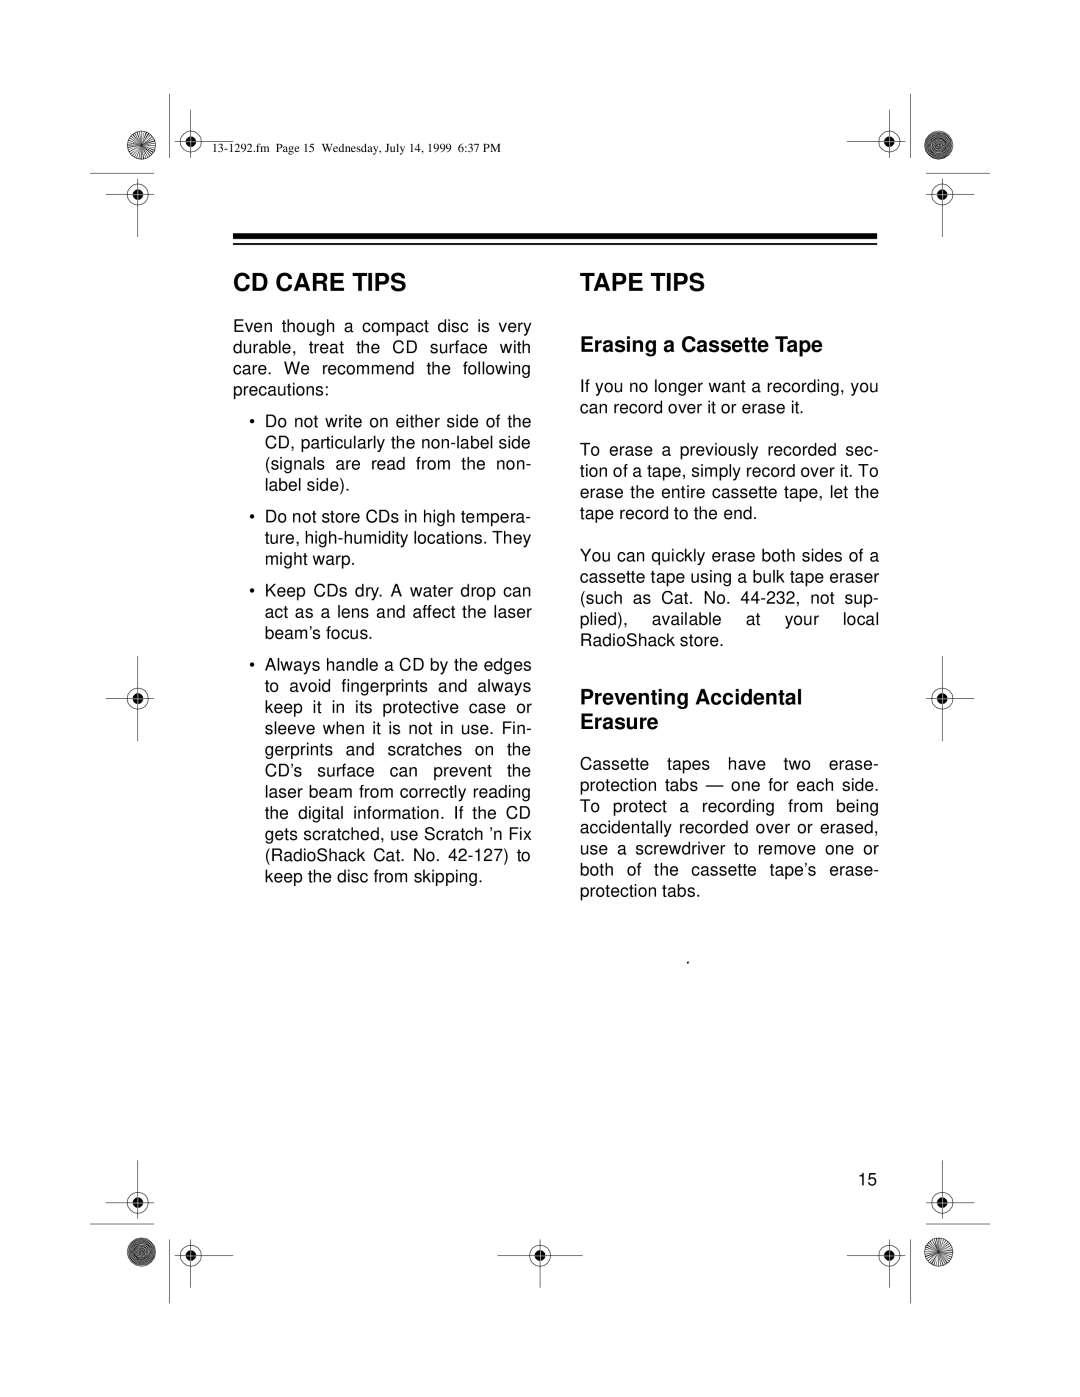 Optimus 739 owner manual Cd Care Tips, Tape Tips, Erasing a Cassette Tape, Preventing Accidental Erasure 